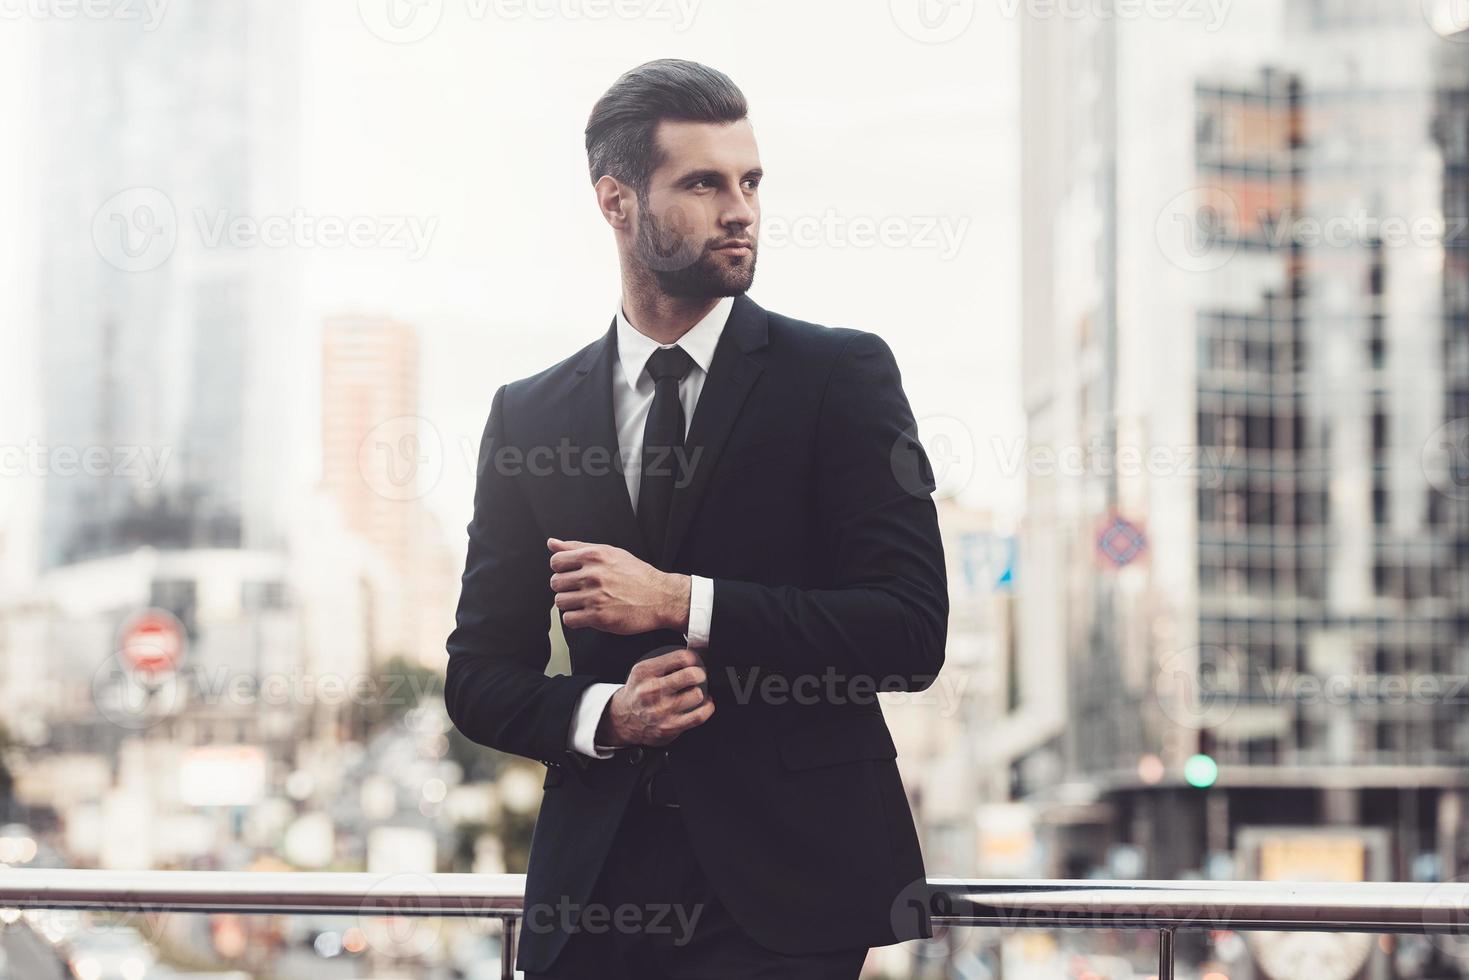 empresário moderno. jovem confiante em terno completo, ajustando a manga e desviar o olhar em pé ao ar livre com a paisagem urbana ao fundo foto